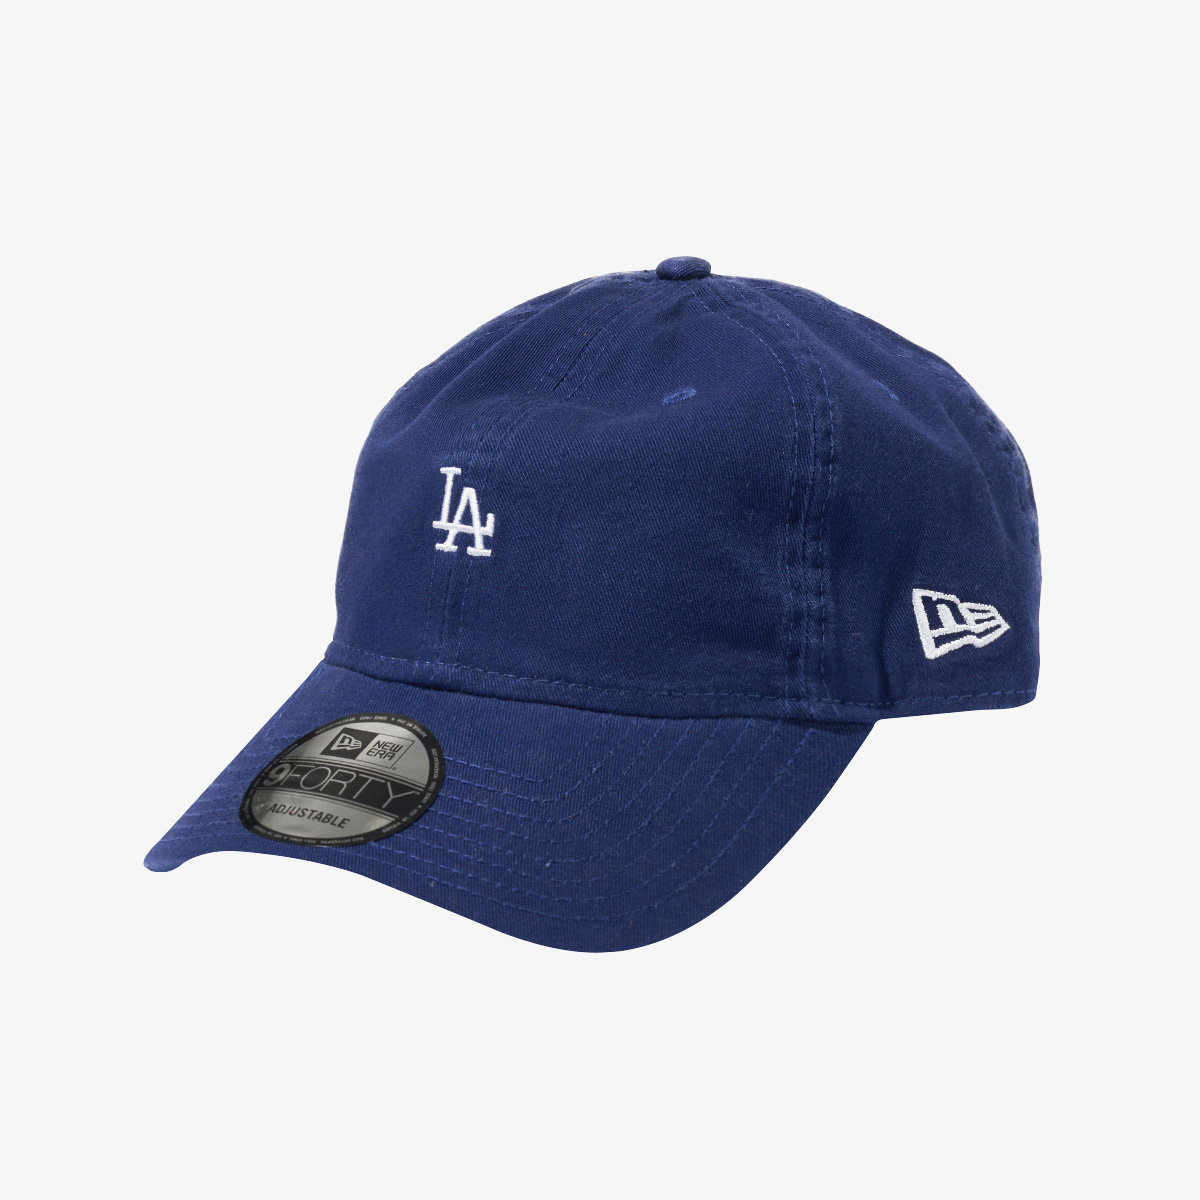 New Era Cap - 940 - Dodgers - Blue » ASAP Shipping